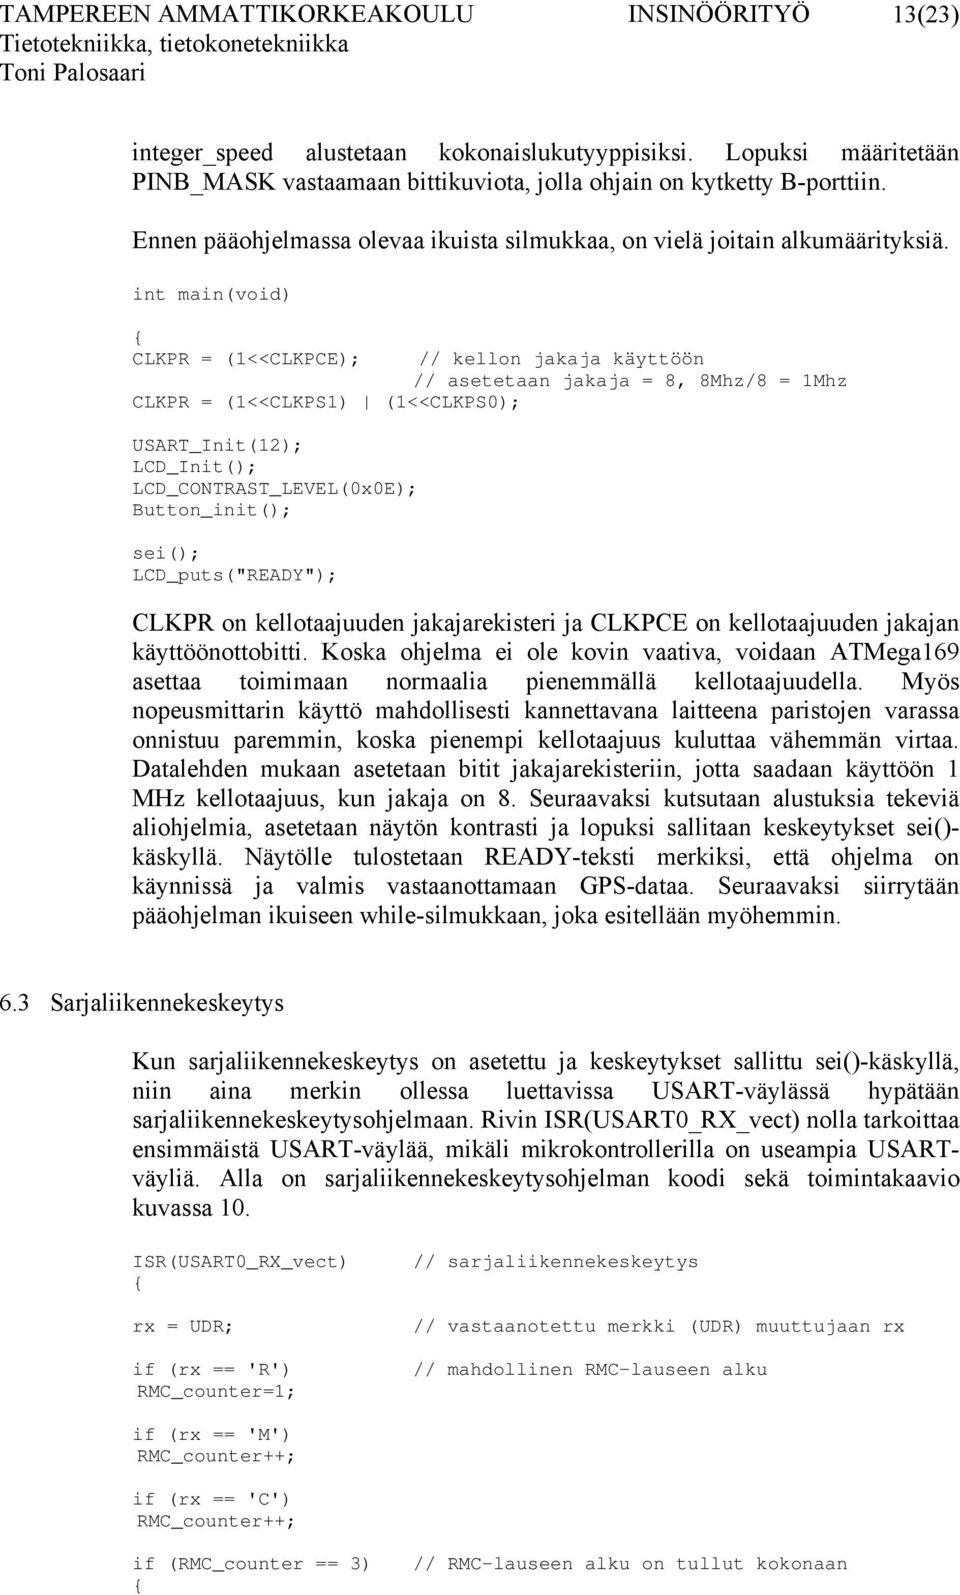 int main(void) CLKPR = (1<<CLKPCE); CLKPR = (1<<CLKPS1) (1<<CLKPS0); USART_Init(12); LCD_Init(); LCD_CONTRAST_LEVEL(0x0E); Button_init(); sei(); LCD_puts("READY"); // kellon jakaja käyttöön //